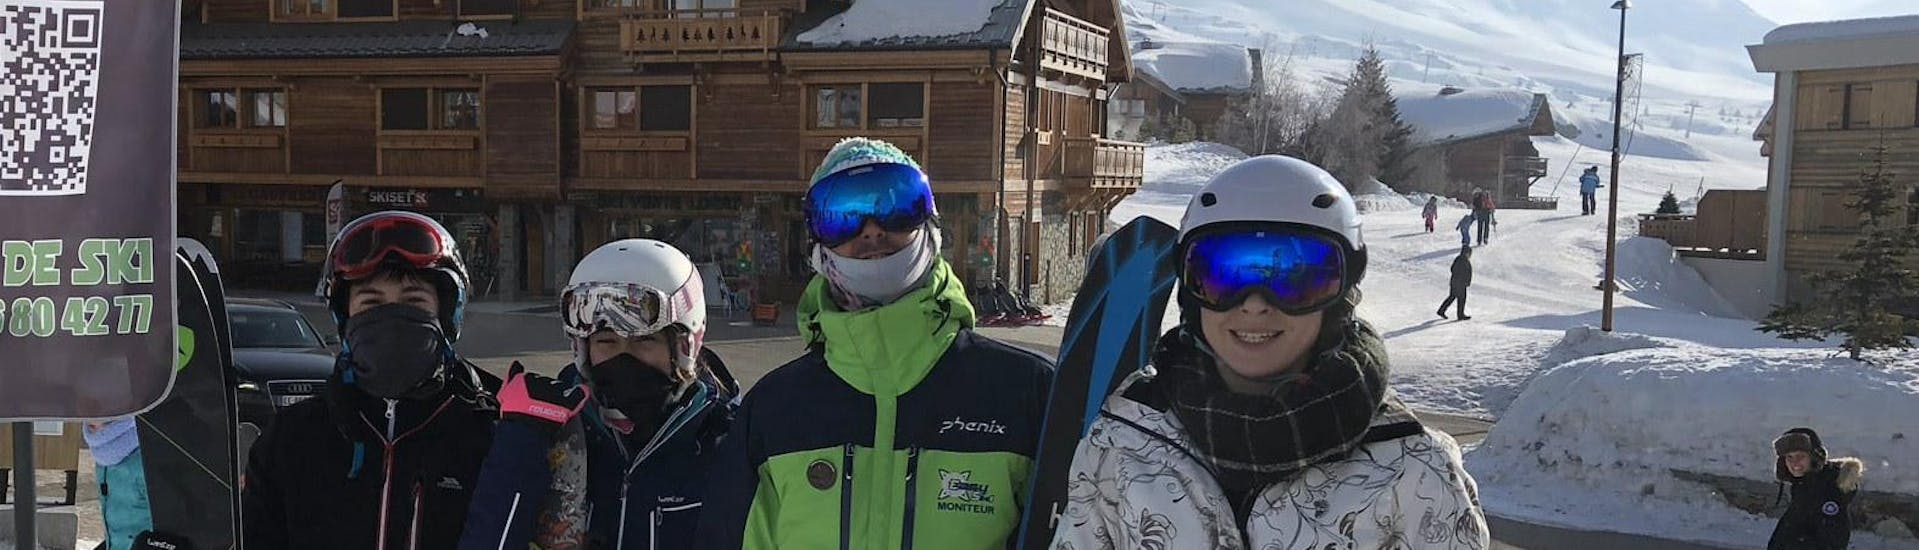 Cours de ski freeride Ados (12-18 ans) pour Skieurs expérimentés.